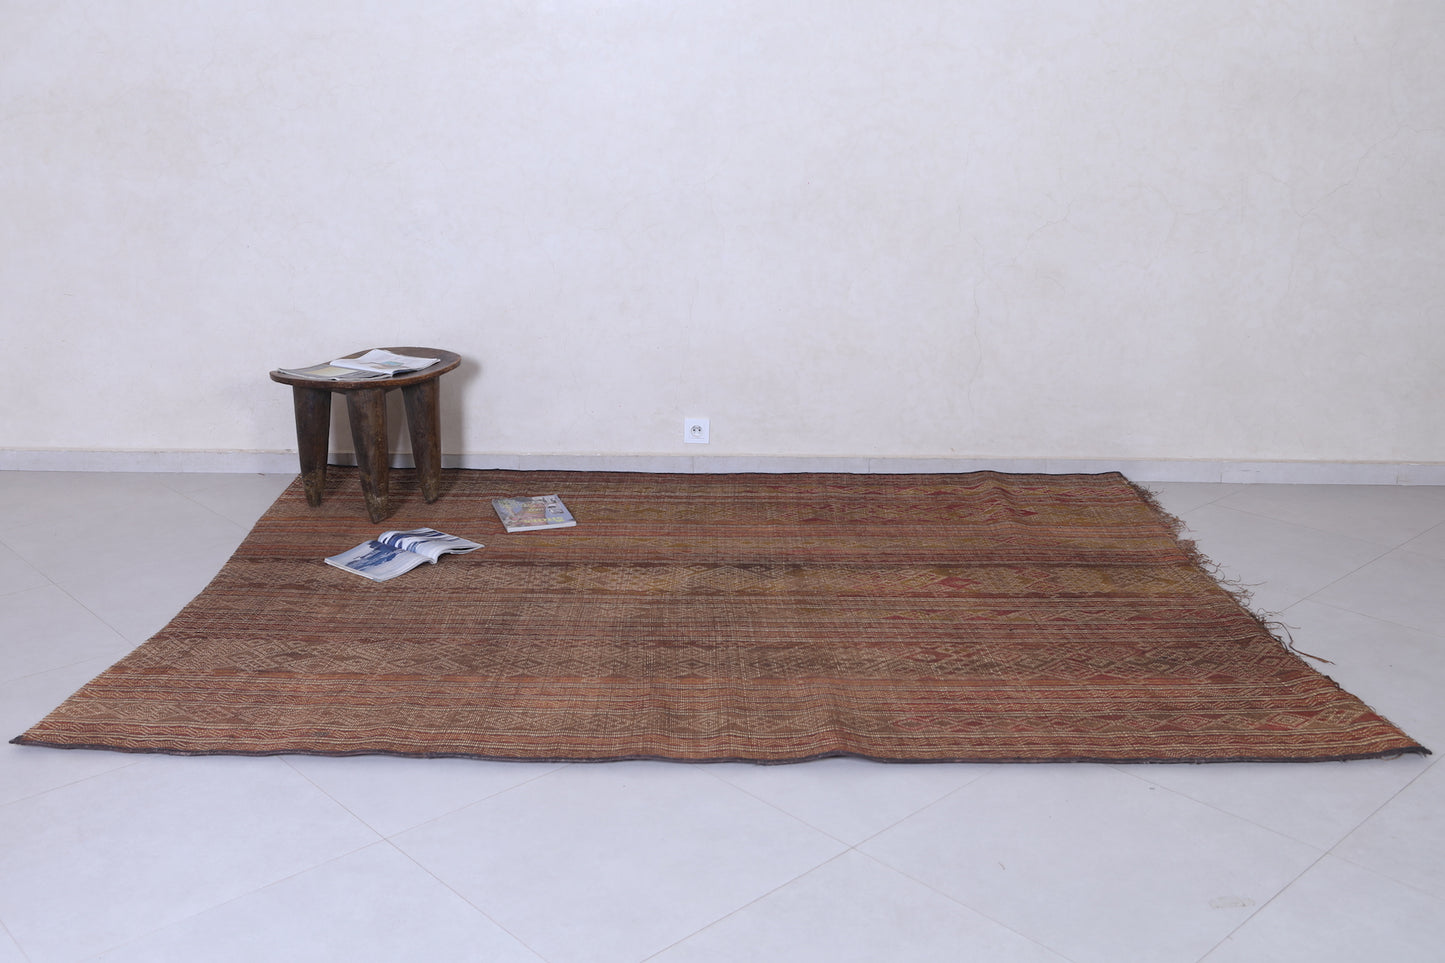 Vintage Tuareg rug 6.7 X 9 Feet